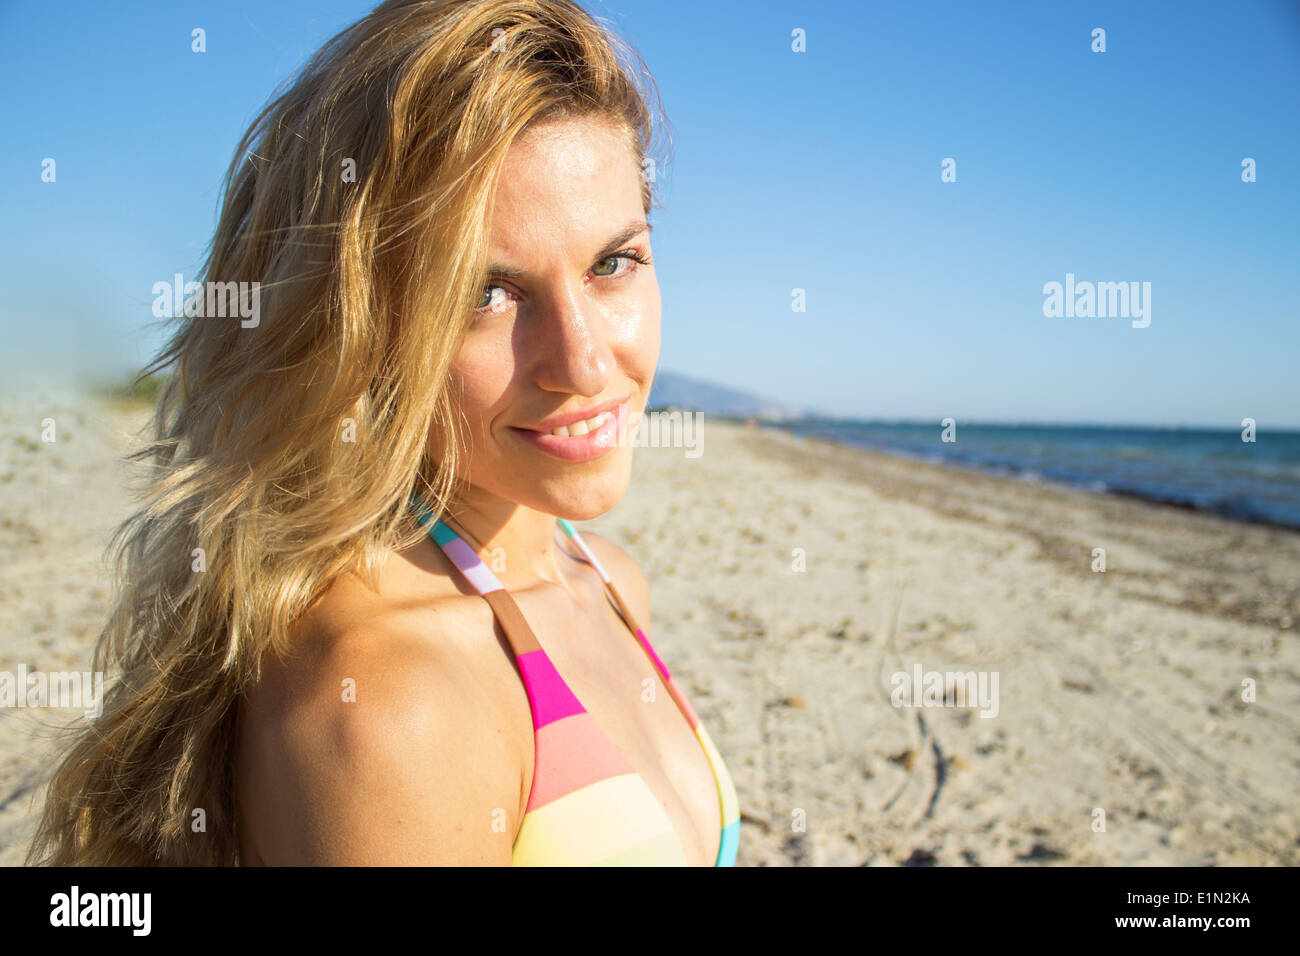 Woman Mädchen glücklich Strand Sommer Urlaub Meer Meer Bikini Gesicht Lächeln entspannt lächelnd Stockfoto